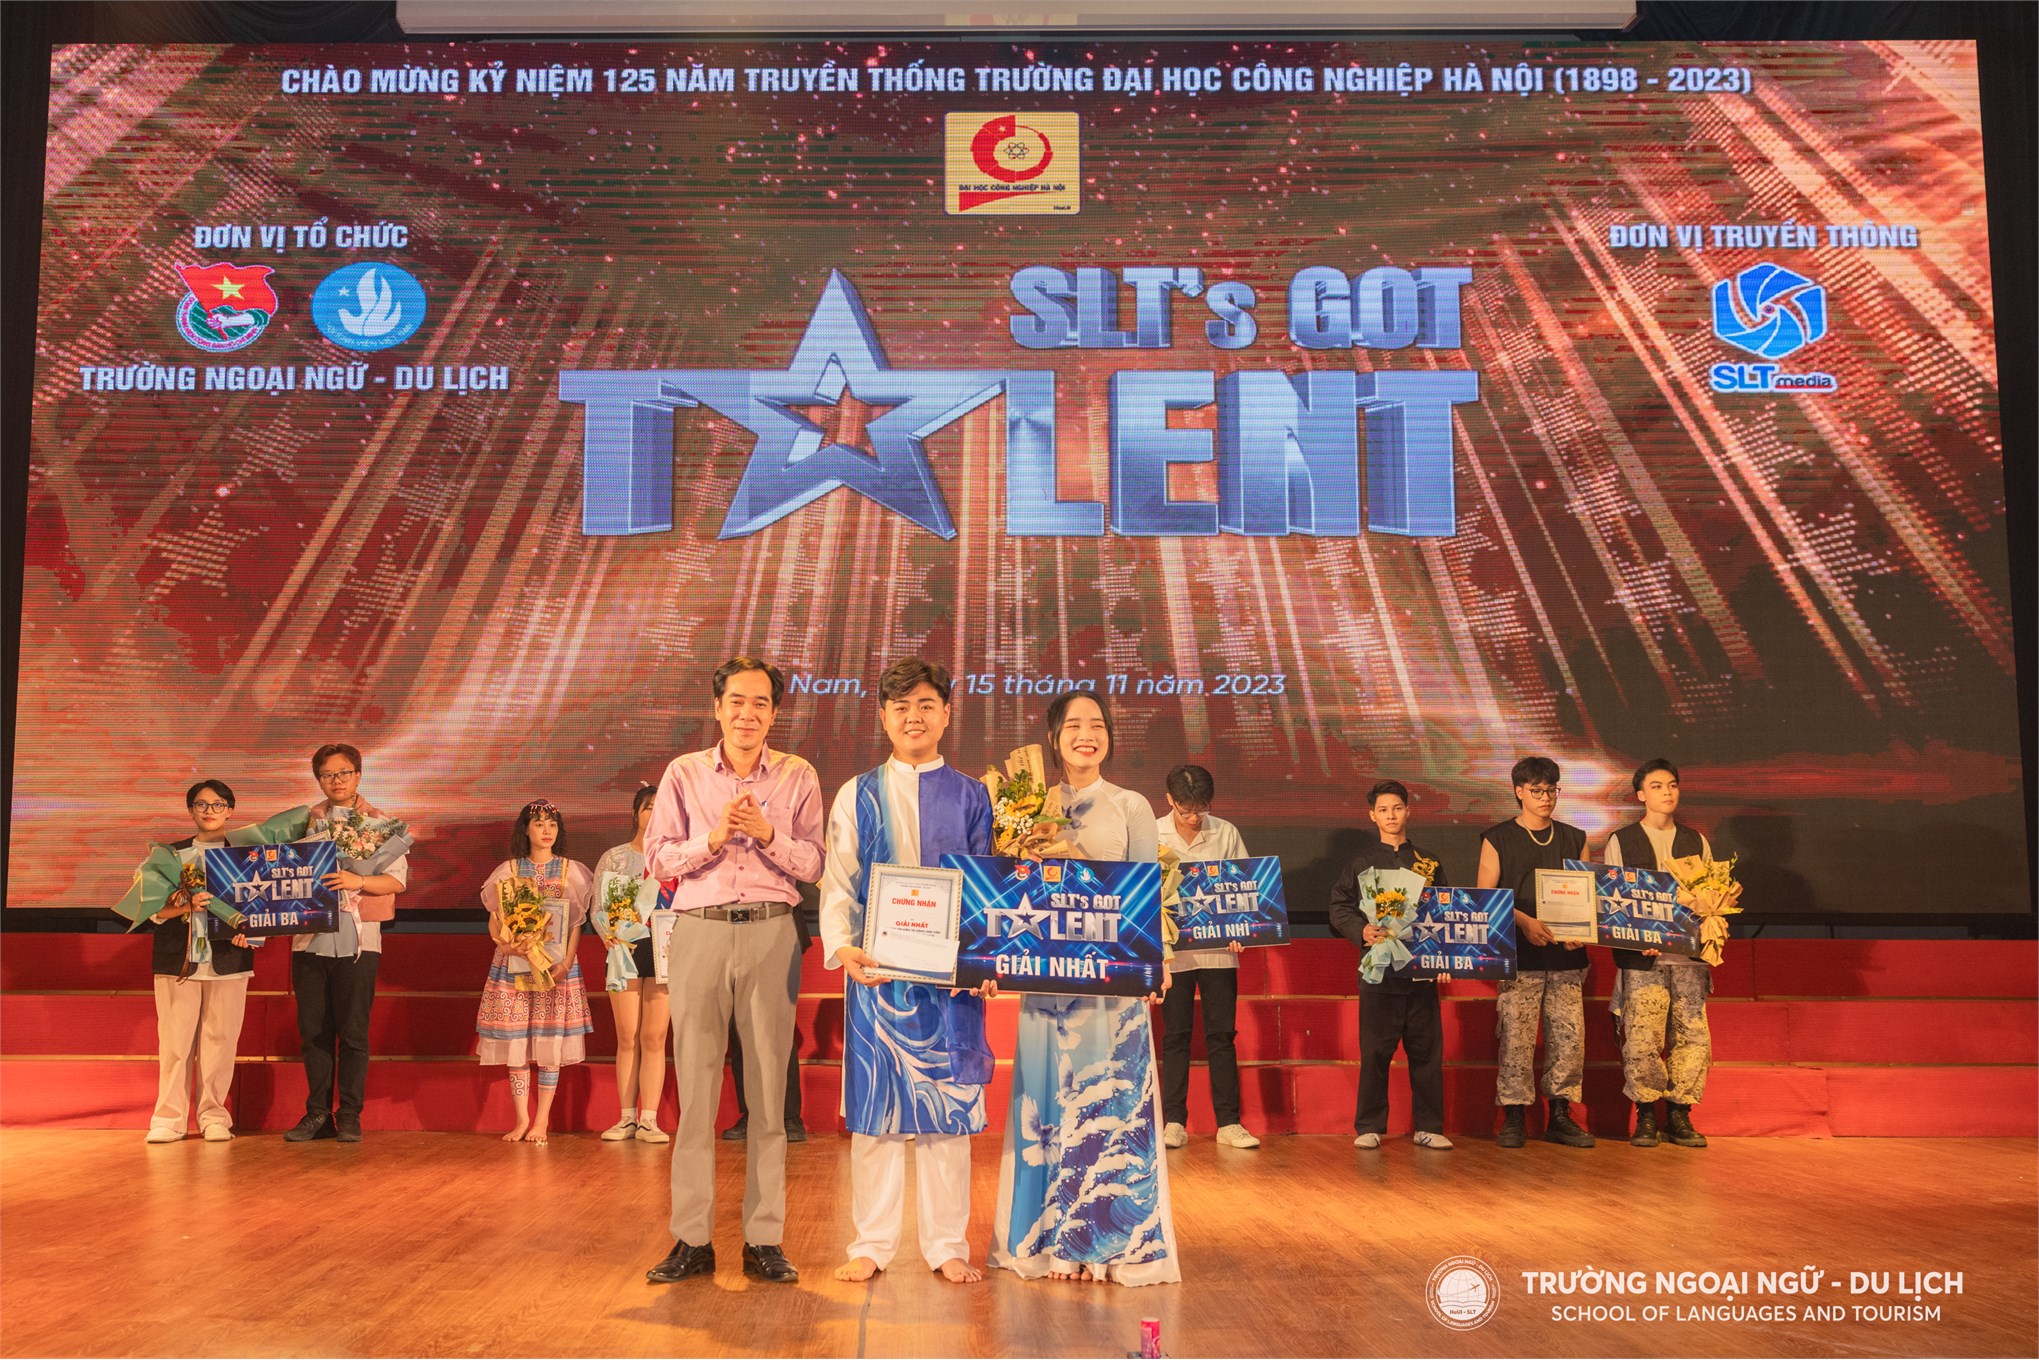 SLT's Got Talent 2023: Đêm Chung kết mãn nhãn, ngập tràn cảm xúc